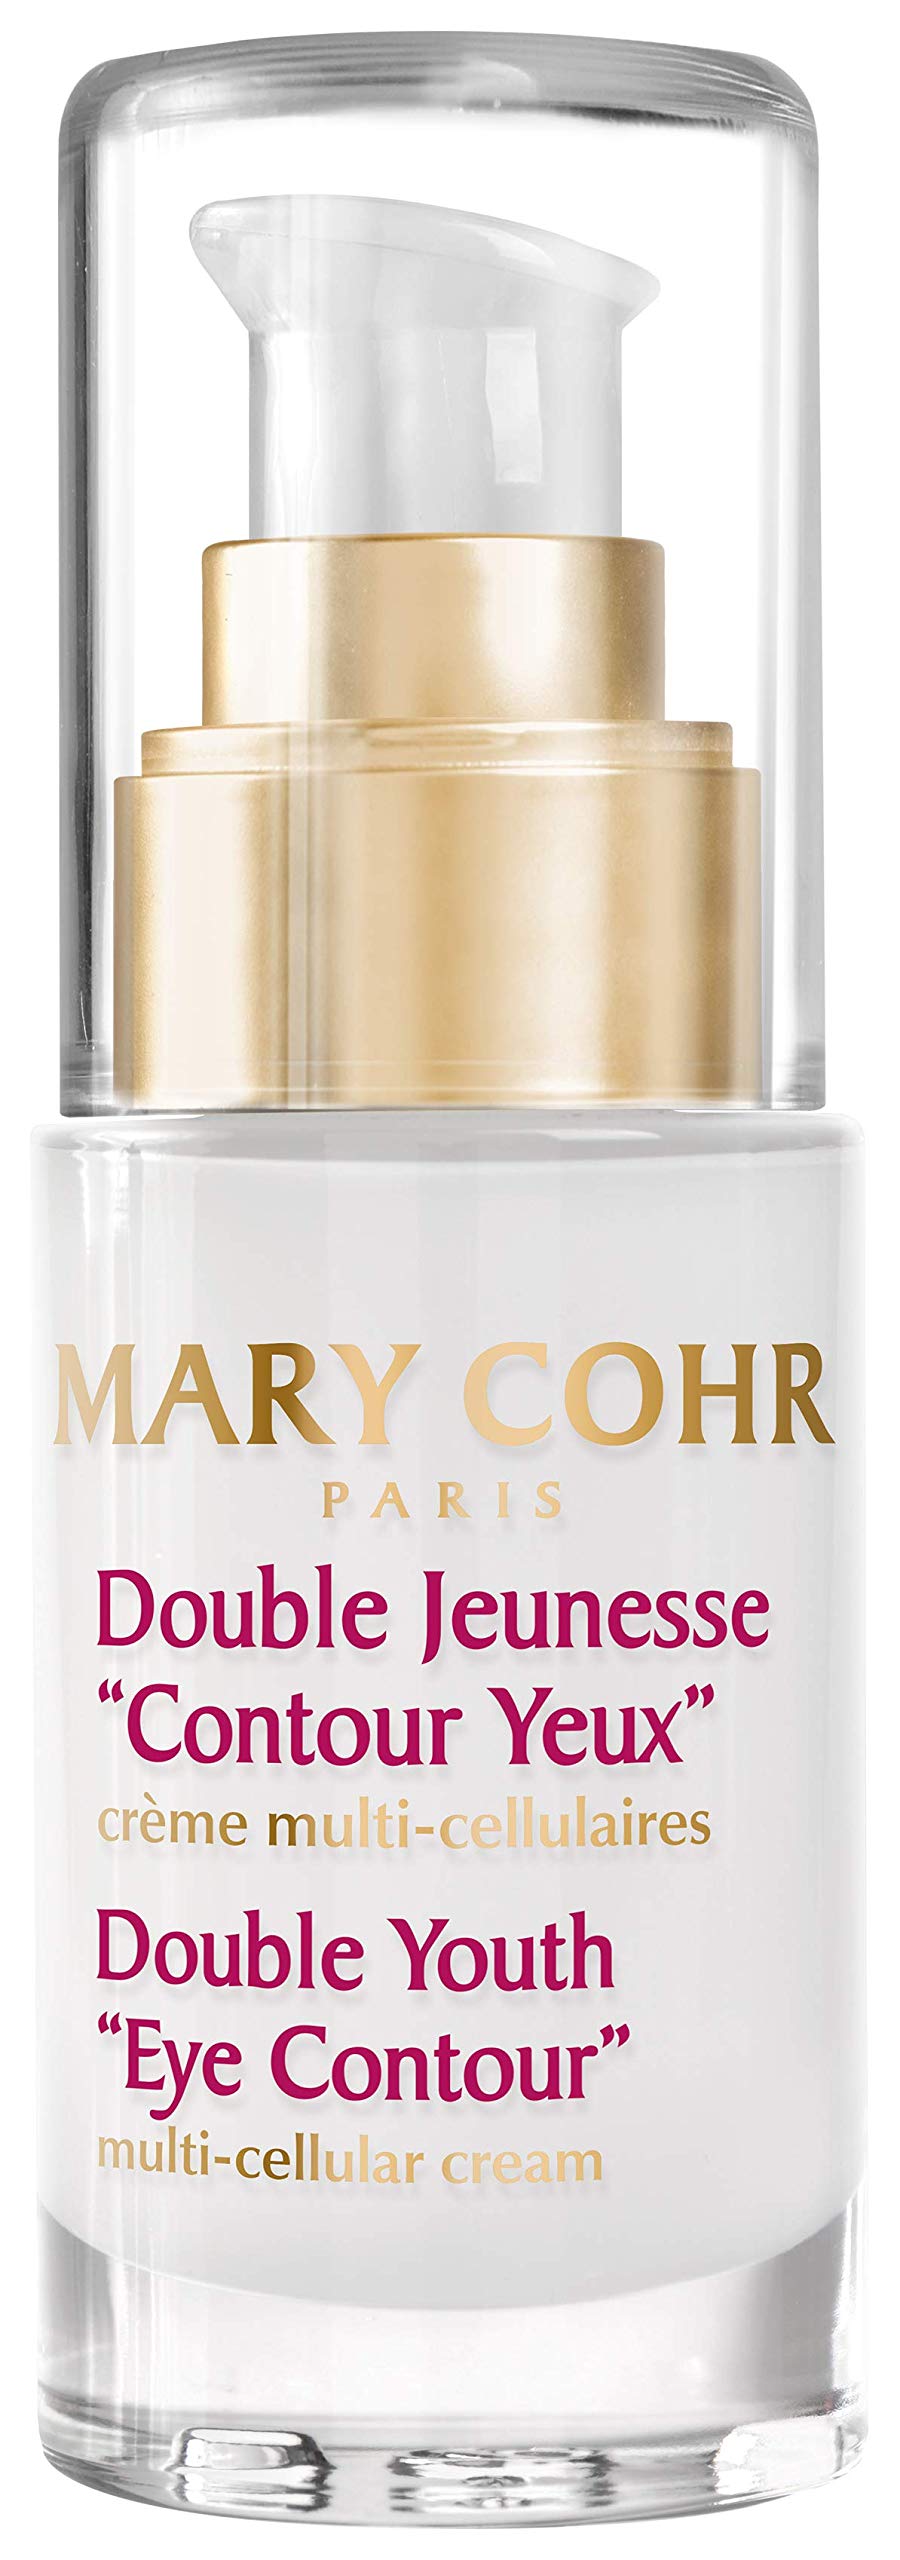 Mary Cohr Double Jeunesse "Contour Yeux"